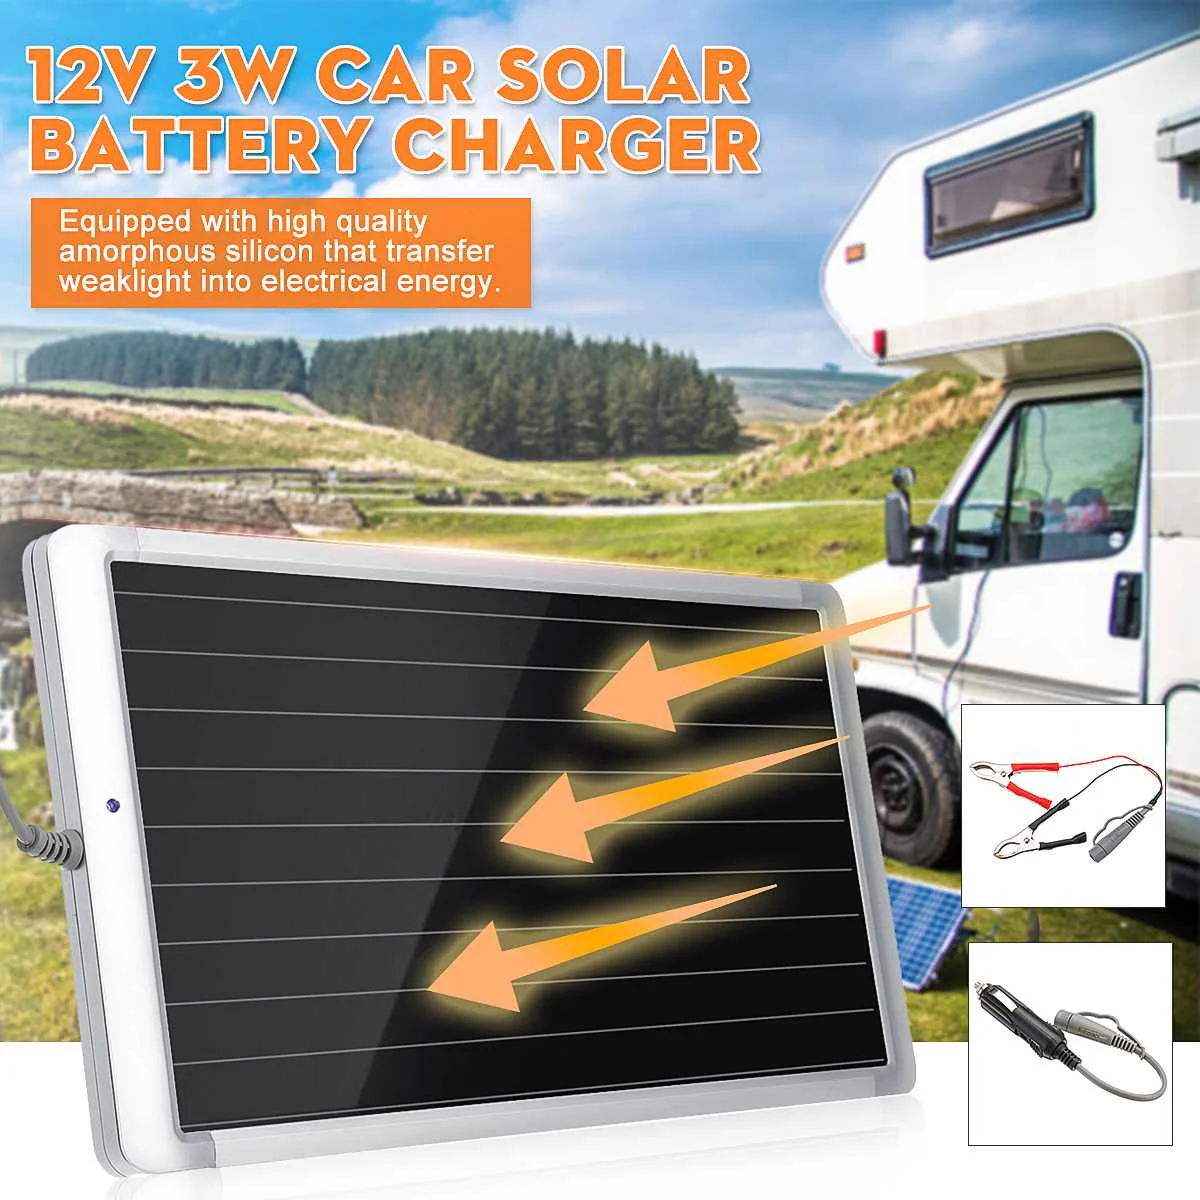 Солнечная Автомобильная батарея зарядное устройство 12 В 3W солнечная панель Струящееся зарядное устройство для сотового телефона автобусы автомобили лодки ATV батарея Зарядка солнечная панель